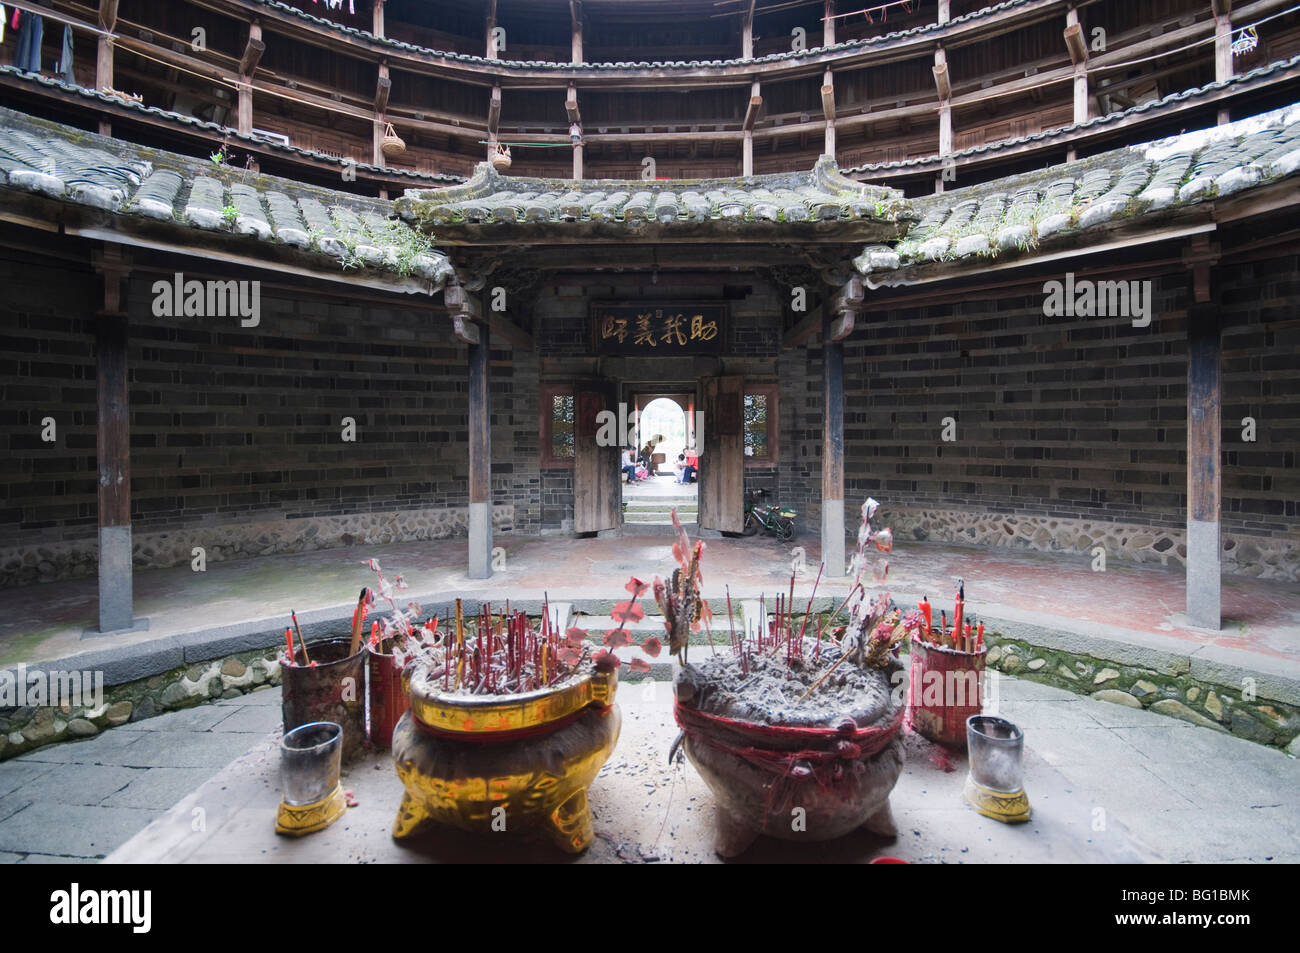 Un lieu de culte dans un bâtiment de terre ronde Tulou Hakka, Site du patrimoine mondial de l'UNESCO, la province de Fujian, Chine, Asie Banque D'Images